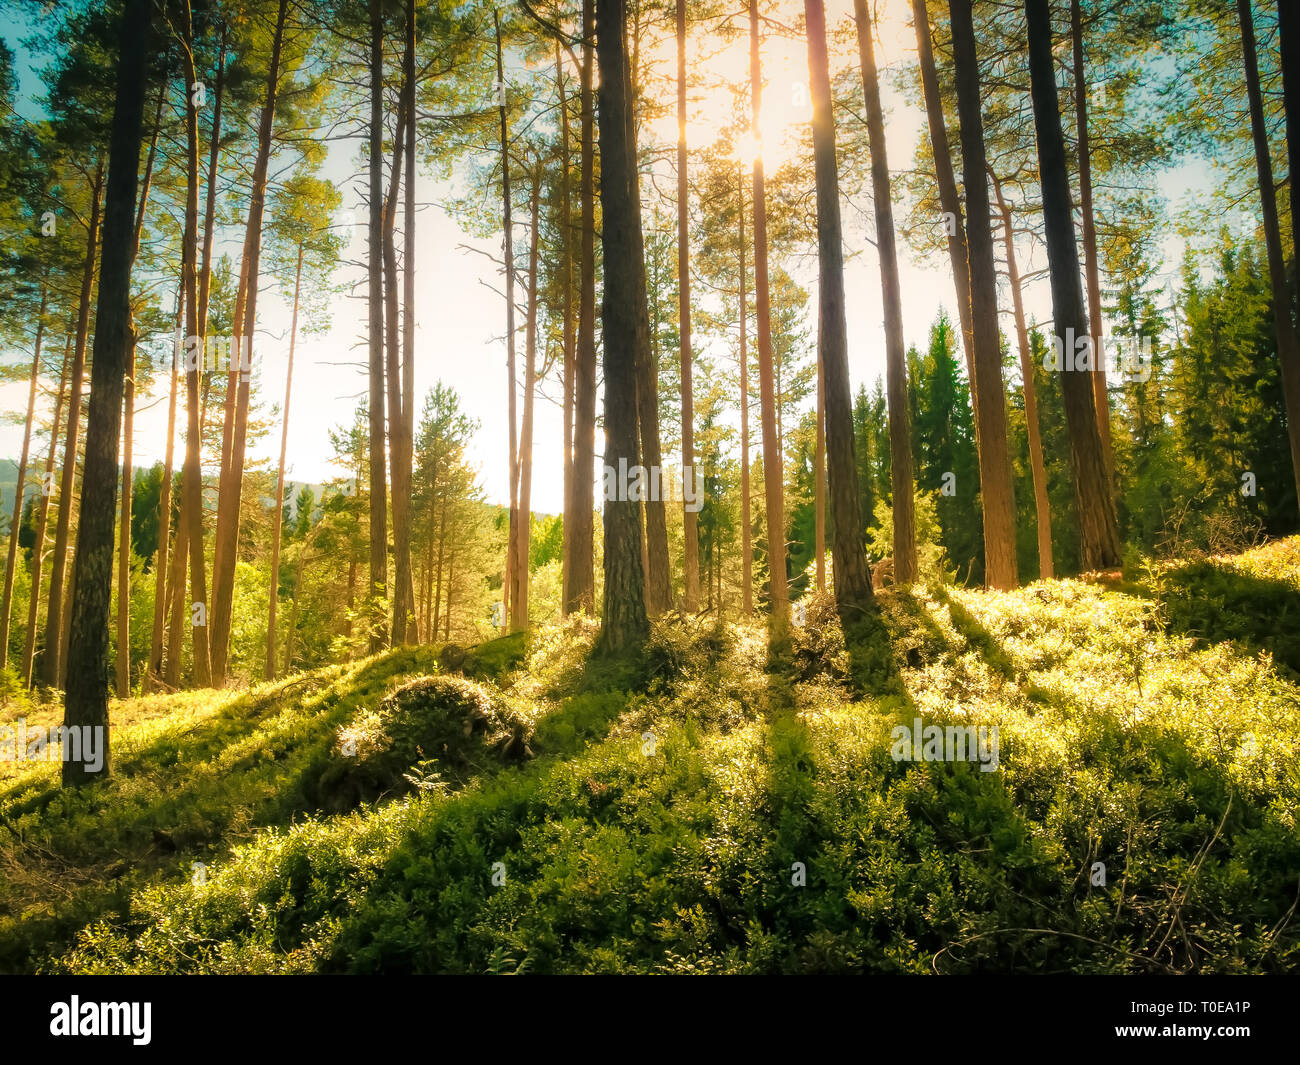 Helle Strahlen von Sonnenlicht durch hohe immergrüne Tanne beruht auf der grünen Vegetation der Heidelbeere Sträucher in einer zauberhaften und ruhigen Wald Stockfoto